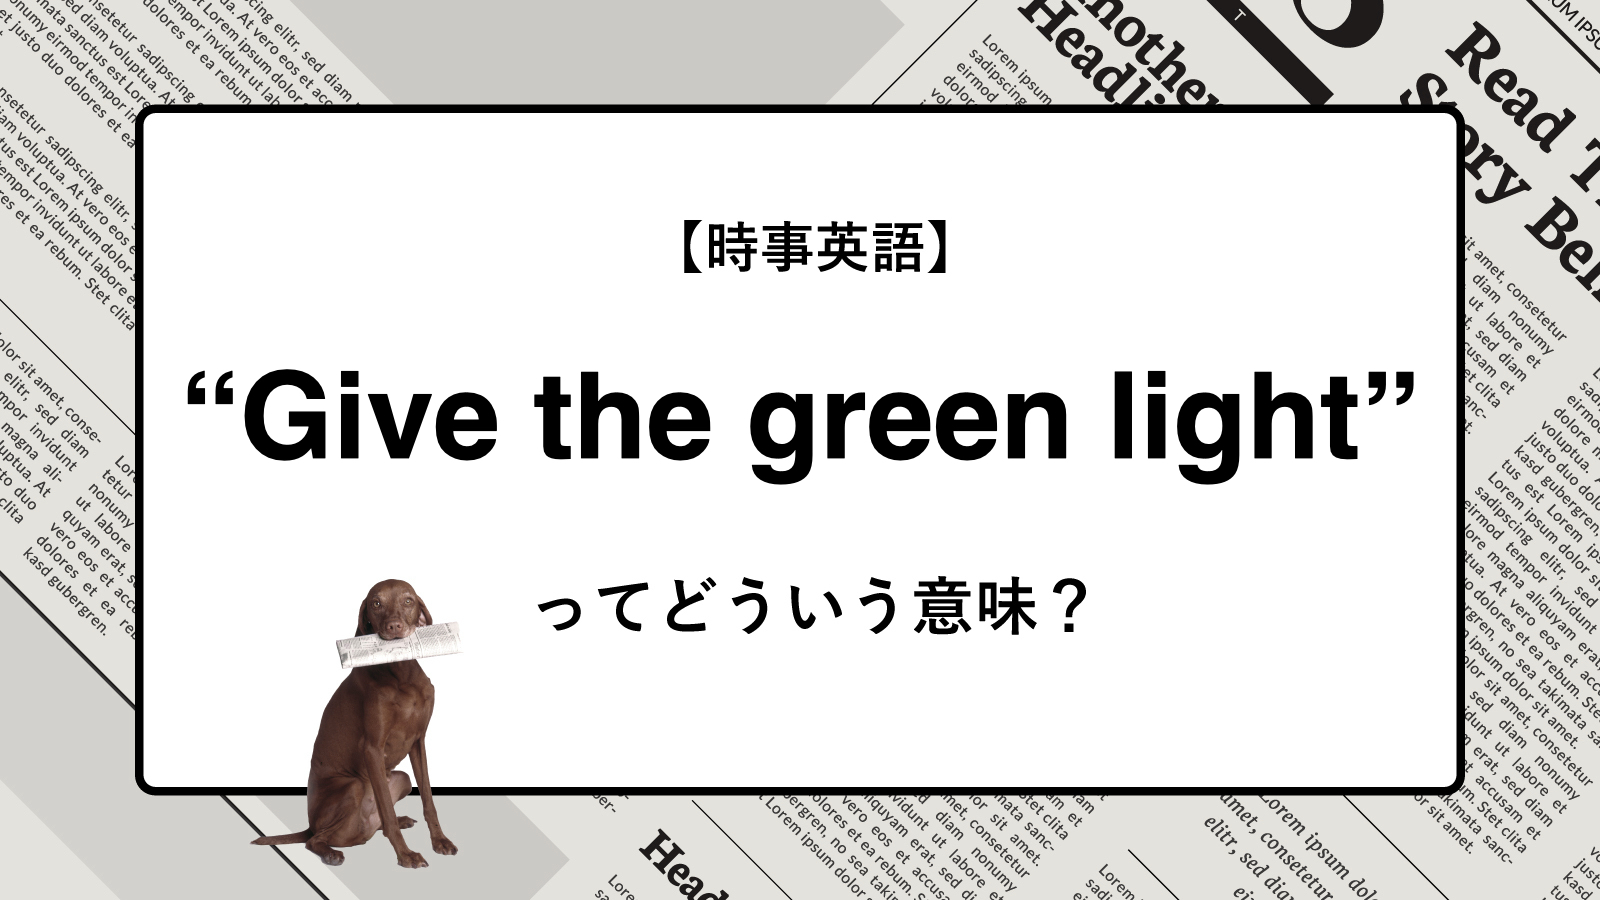 【時事英語】“Give the green light” ってどういう意味？ | ニュースの「キーワード」で語彙力を身につける